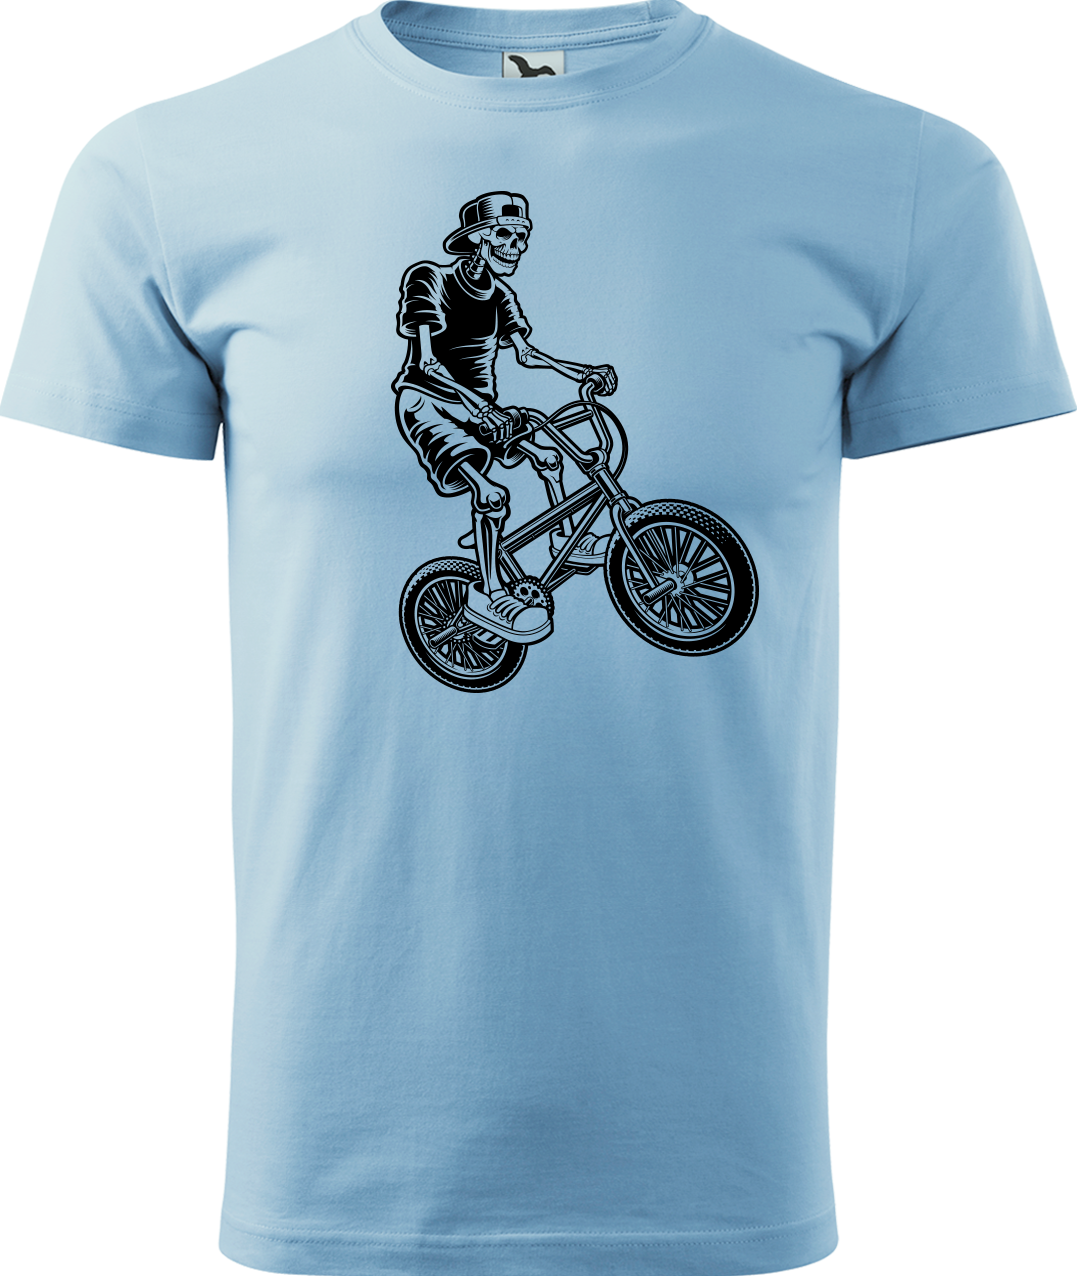 Pánské tričko s kolem - Trial Bike Velikost: L, Barva: Nebesky modrá (15)